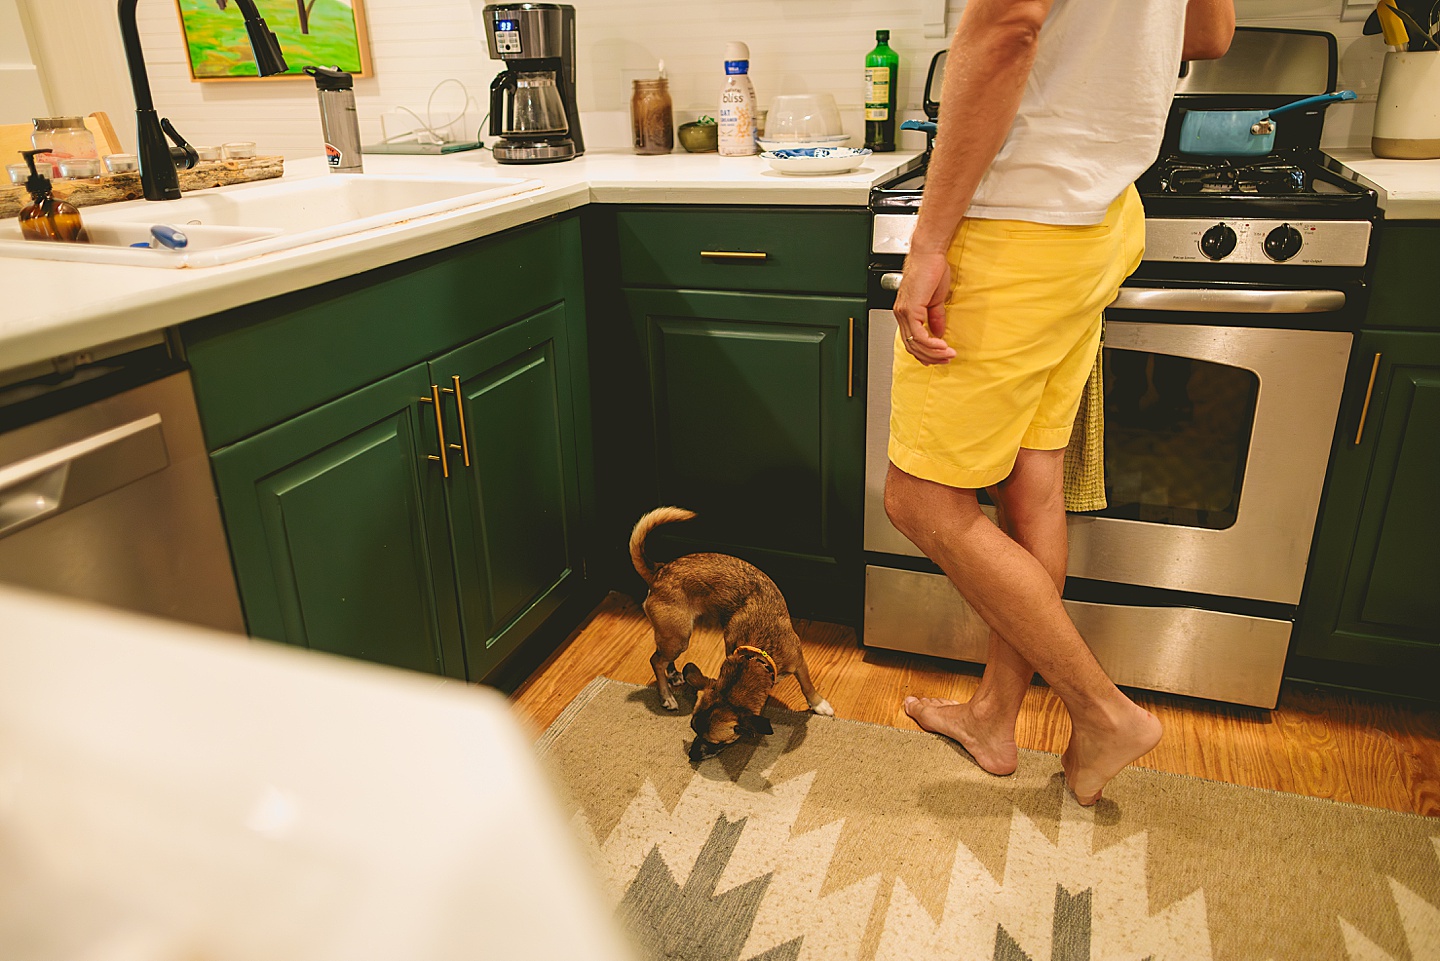 Dog walking around kitchen